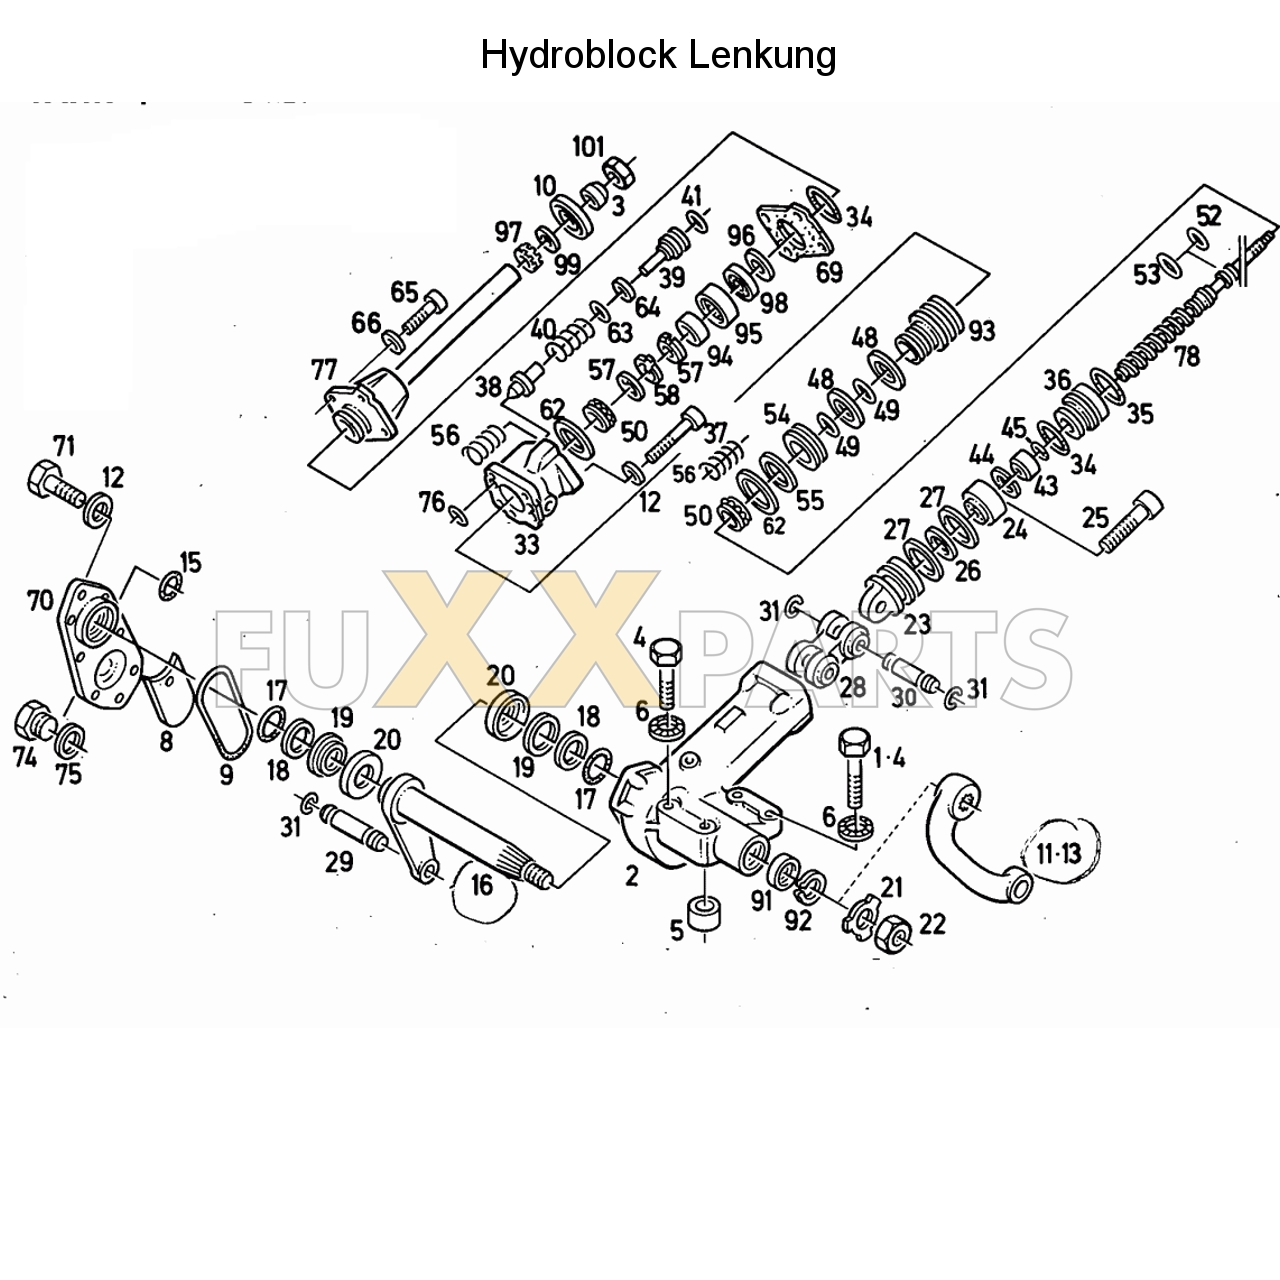 D 6806 Hydraulische Lenkung (Hydroblock)